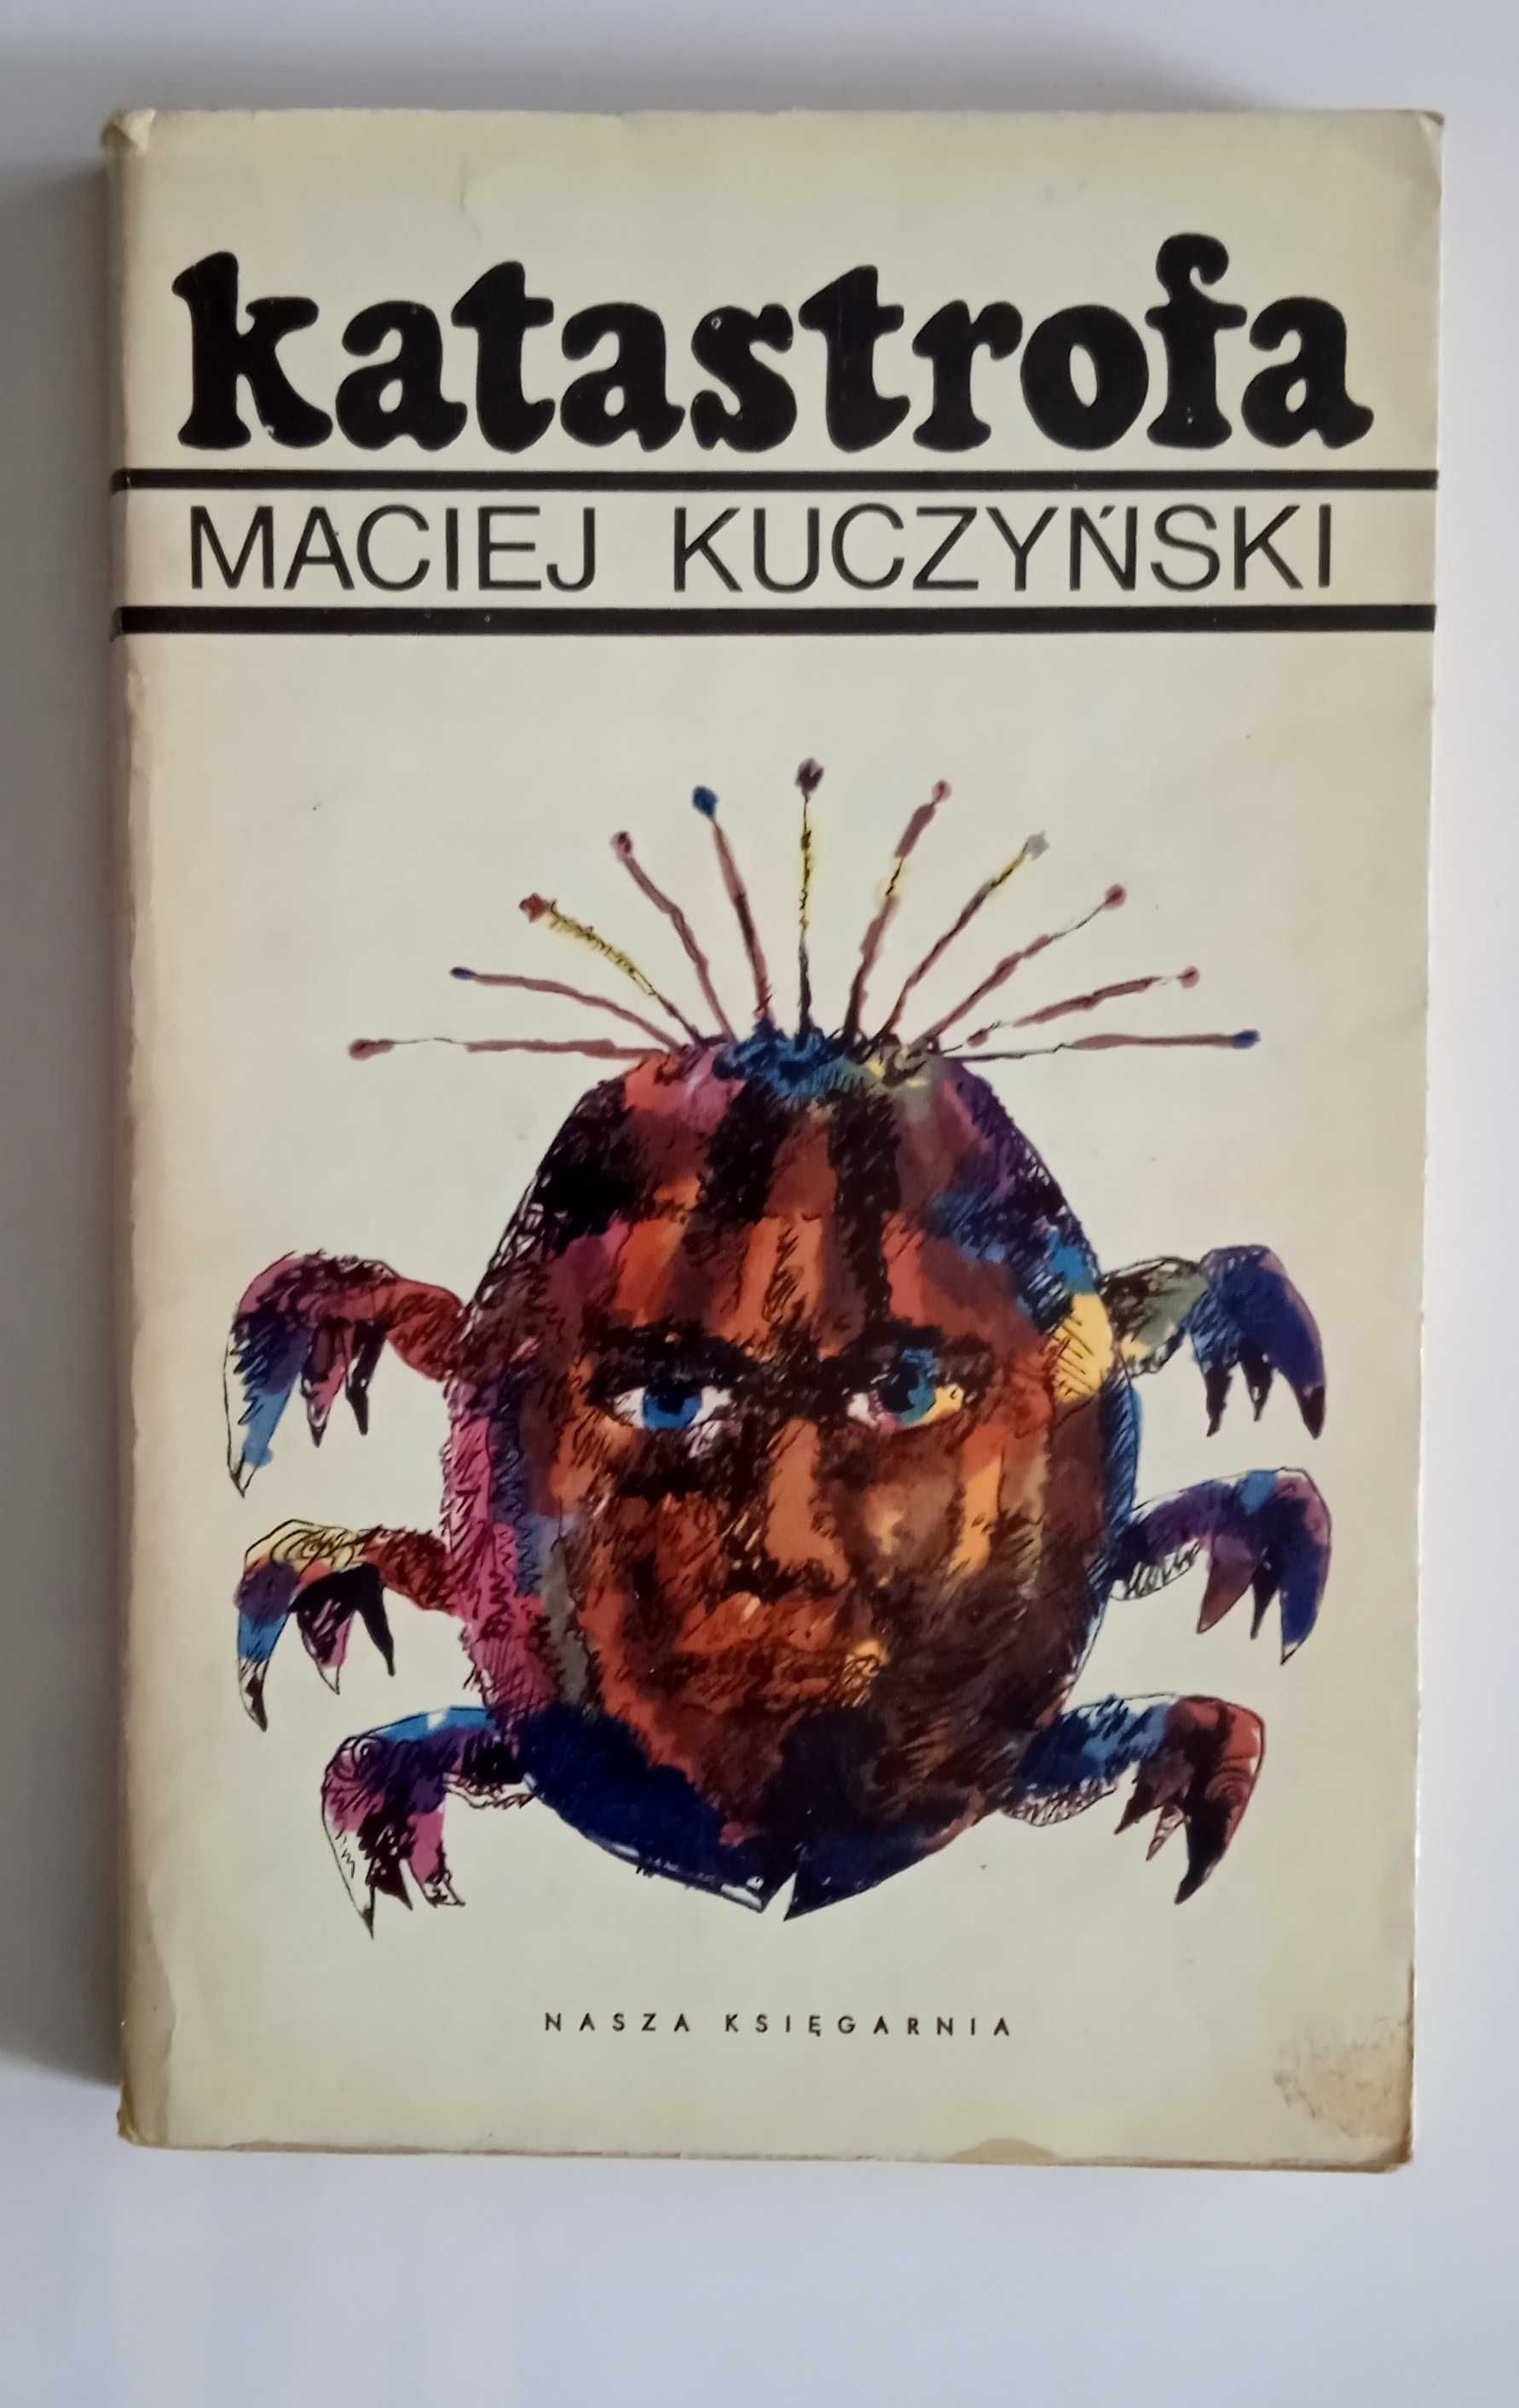 książka "Katastrofa" Maciej Kuczyński